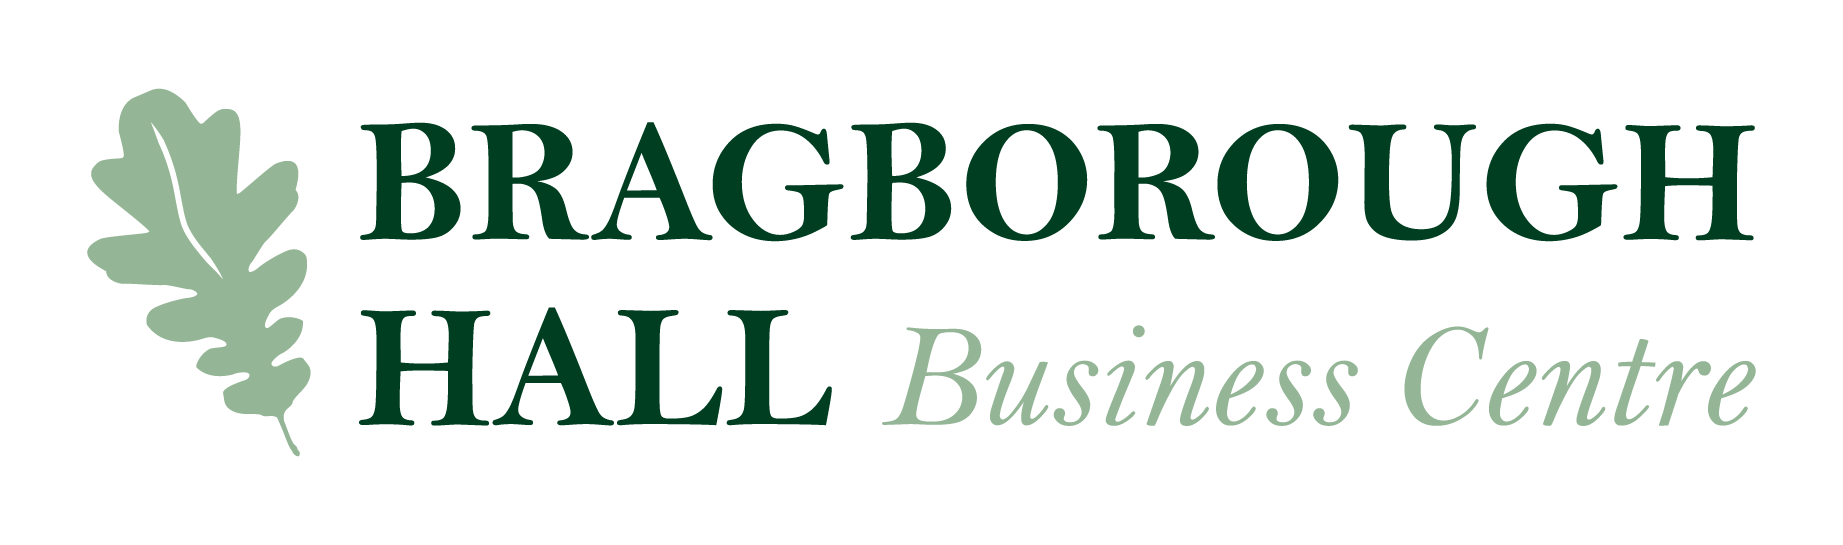 Bragborough Hall Business Centre